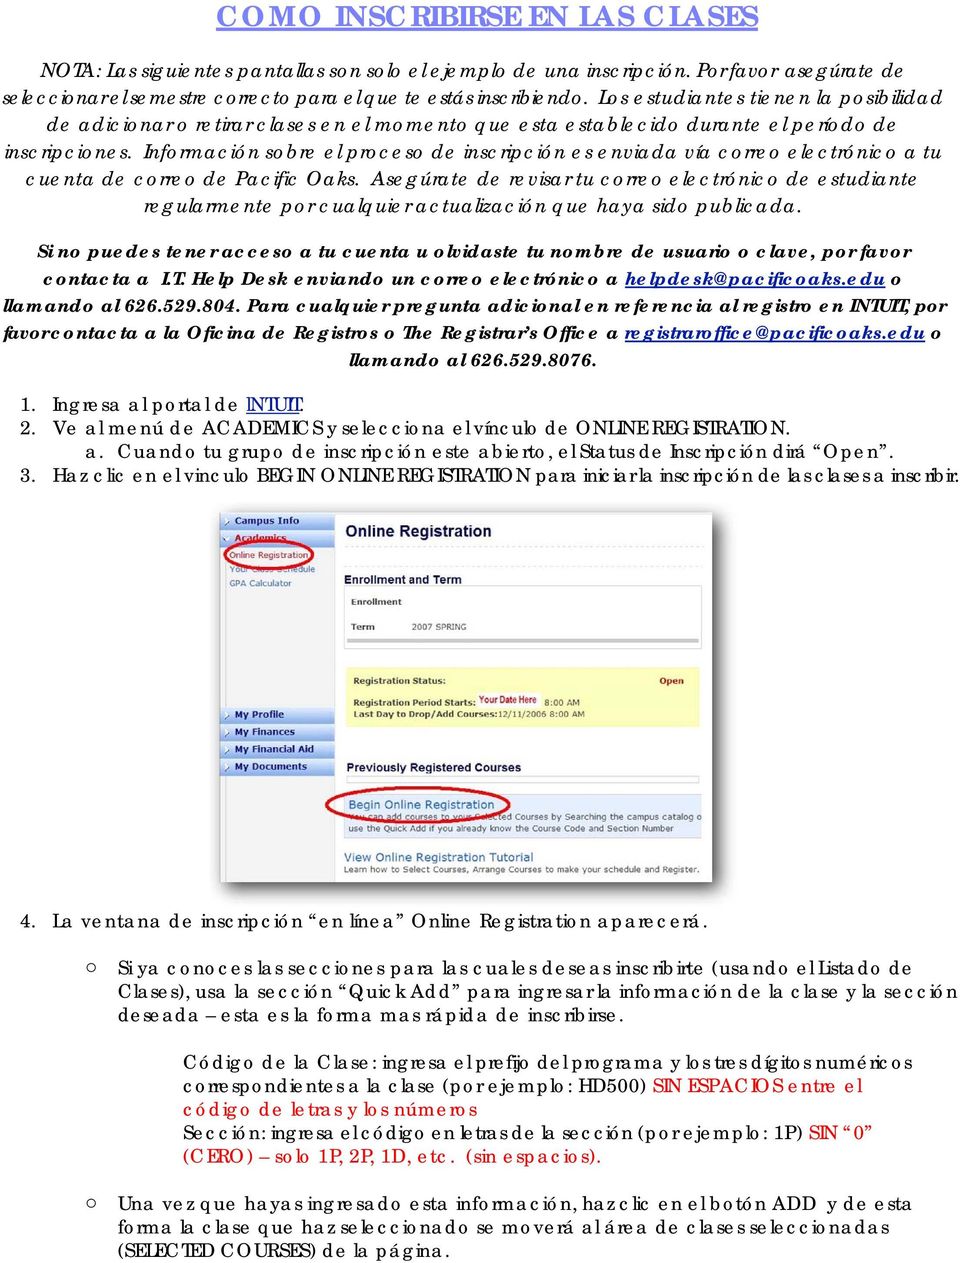 Información sobre el proceso de inscripción es enviada vía correo electrónico a tu cuenta de correo de Pacific Oaks.